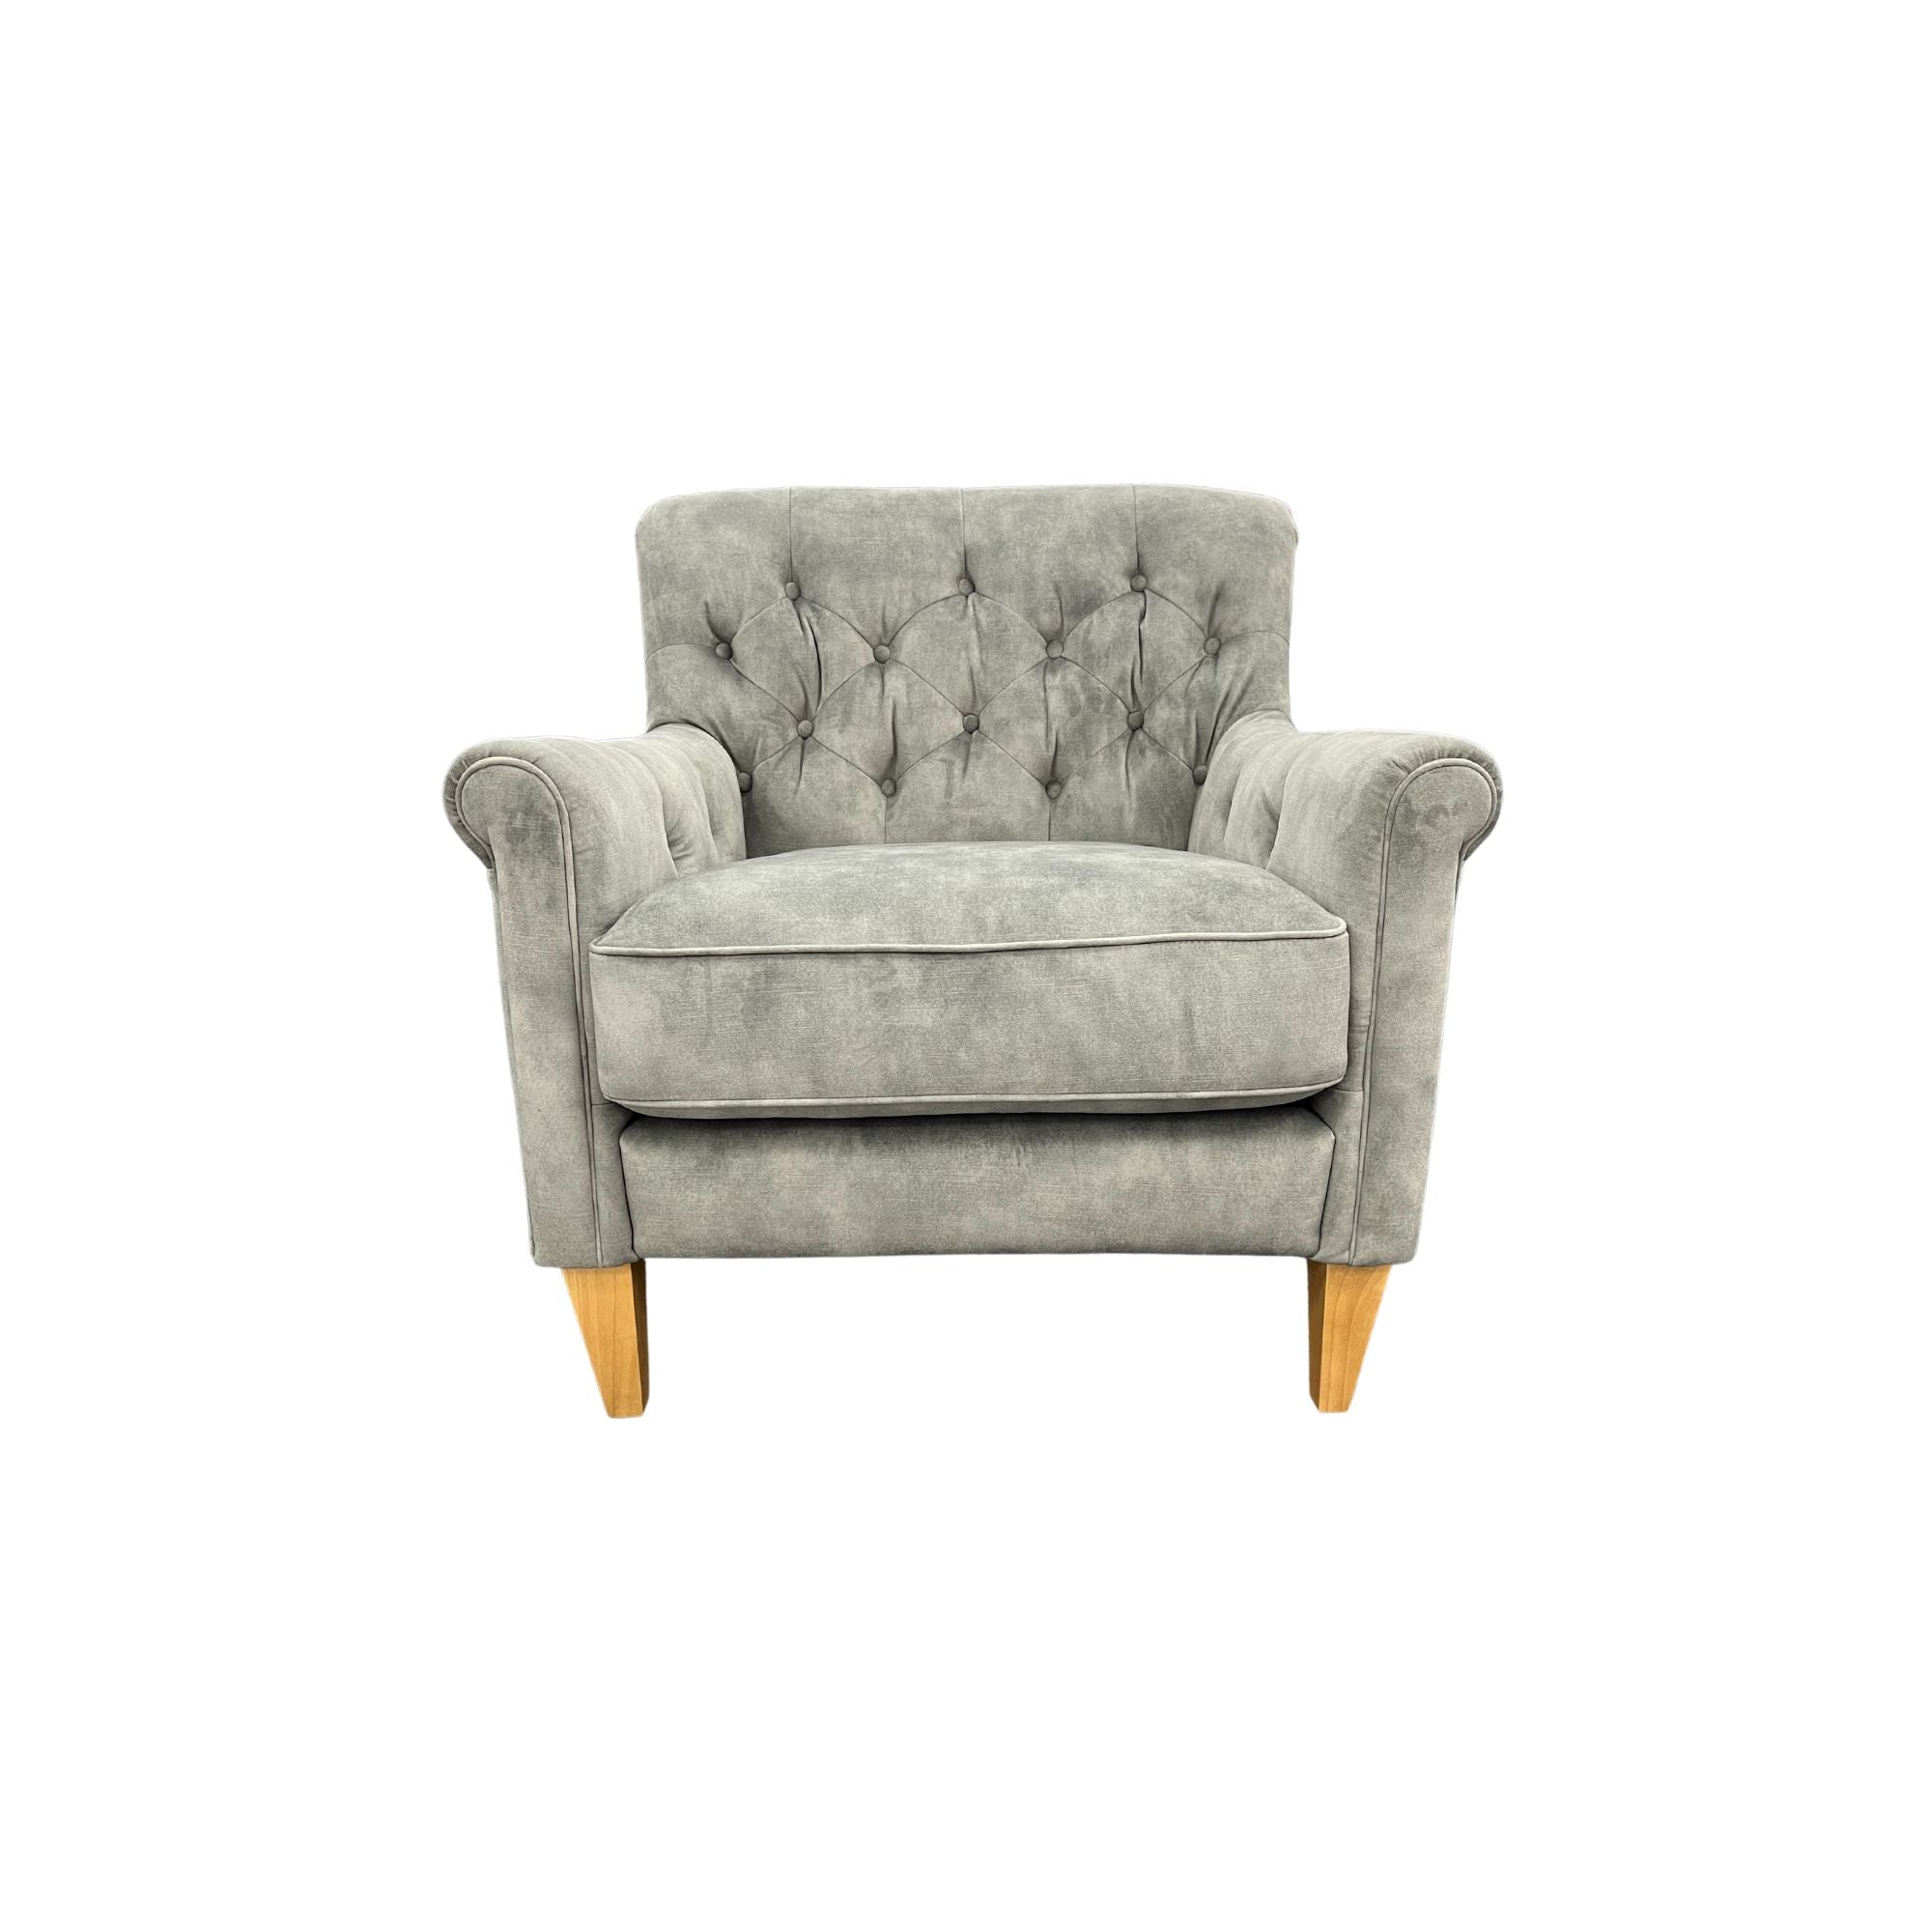 Captains Club Chair - Urban Sofa - Misty Grey Velvet Fabric